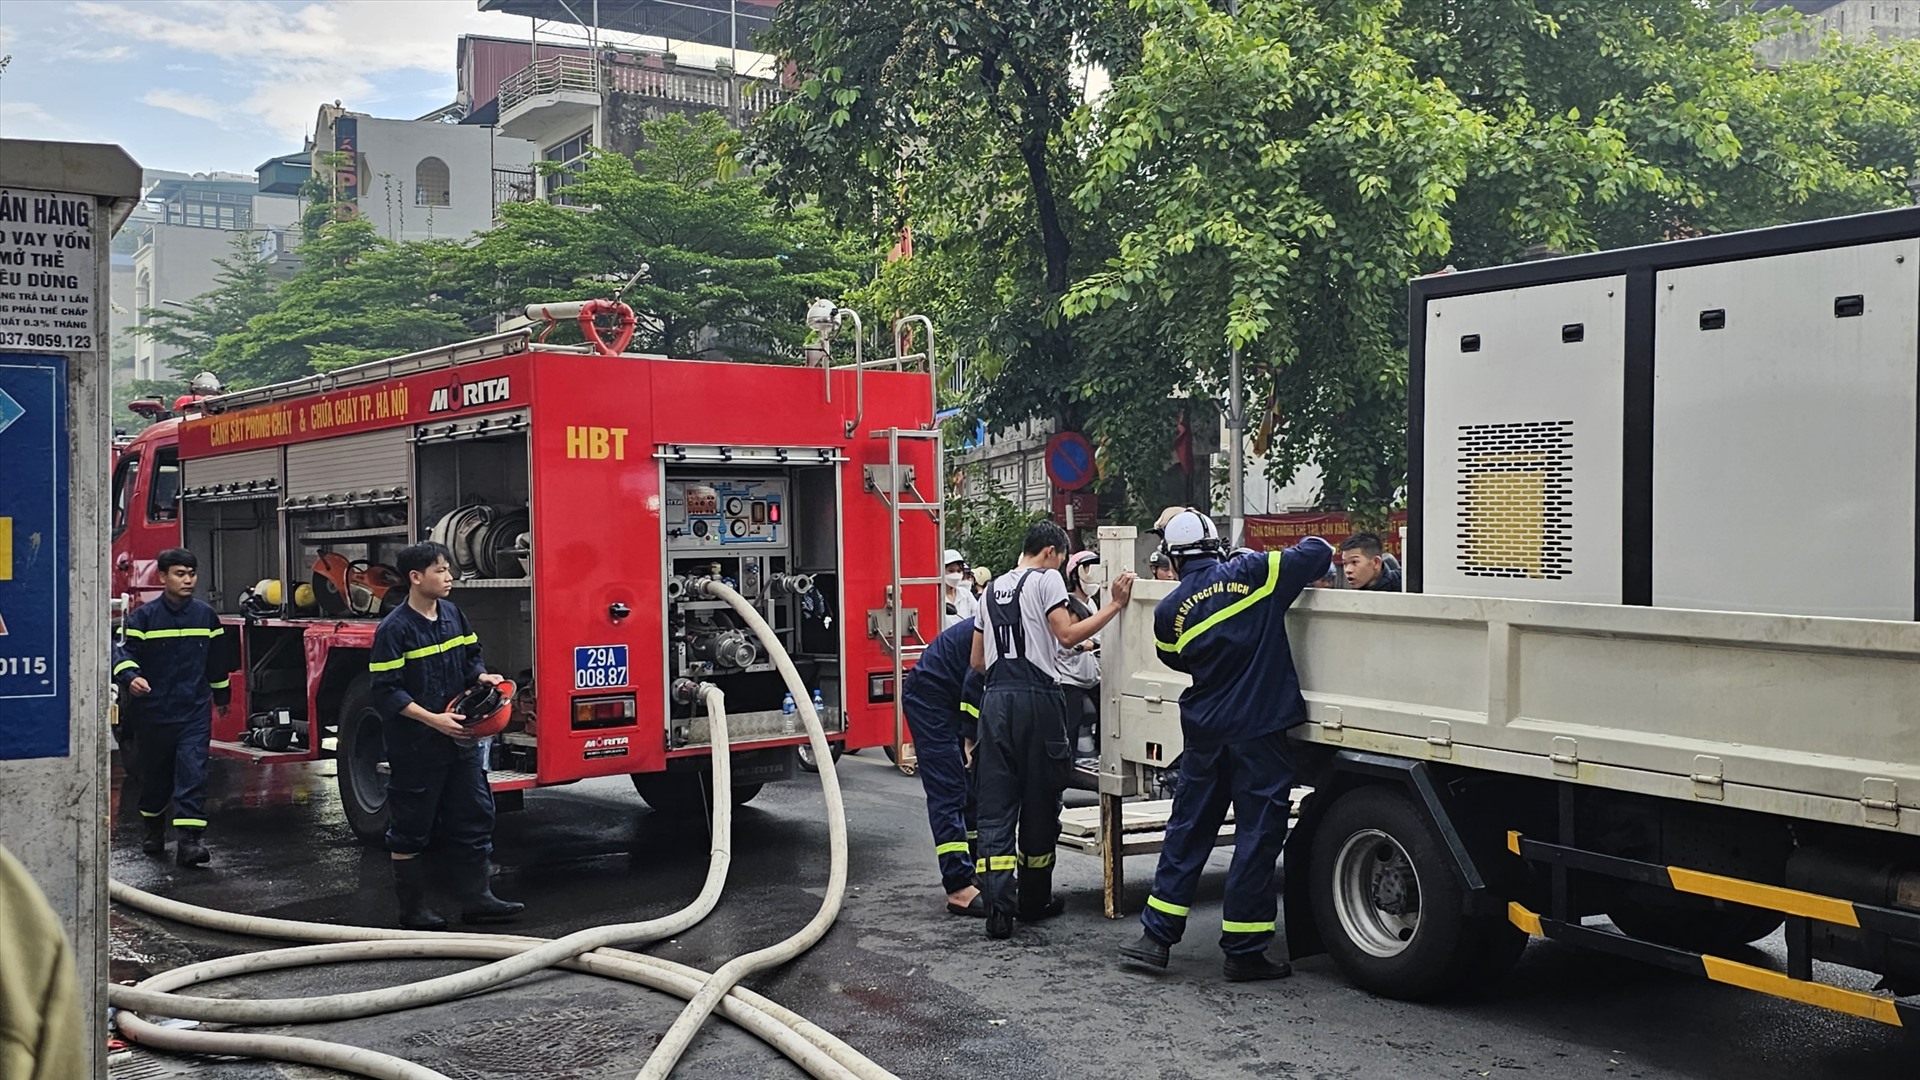 Sáng 8.7, Phòng Cảnh sát phòng cháy chữa cháy và Cứu nạn cứu hộ - Công an TP Hà Nội cho biết, trên địa bàn quận Đống Đa vừa xảy ra vụ cháy, có 3 người mắc kẹt bên trong.